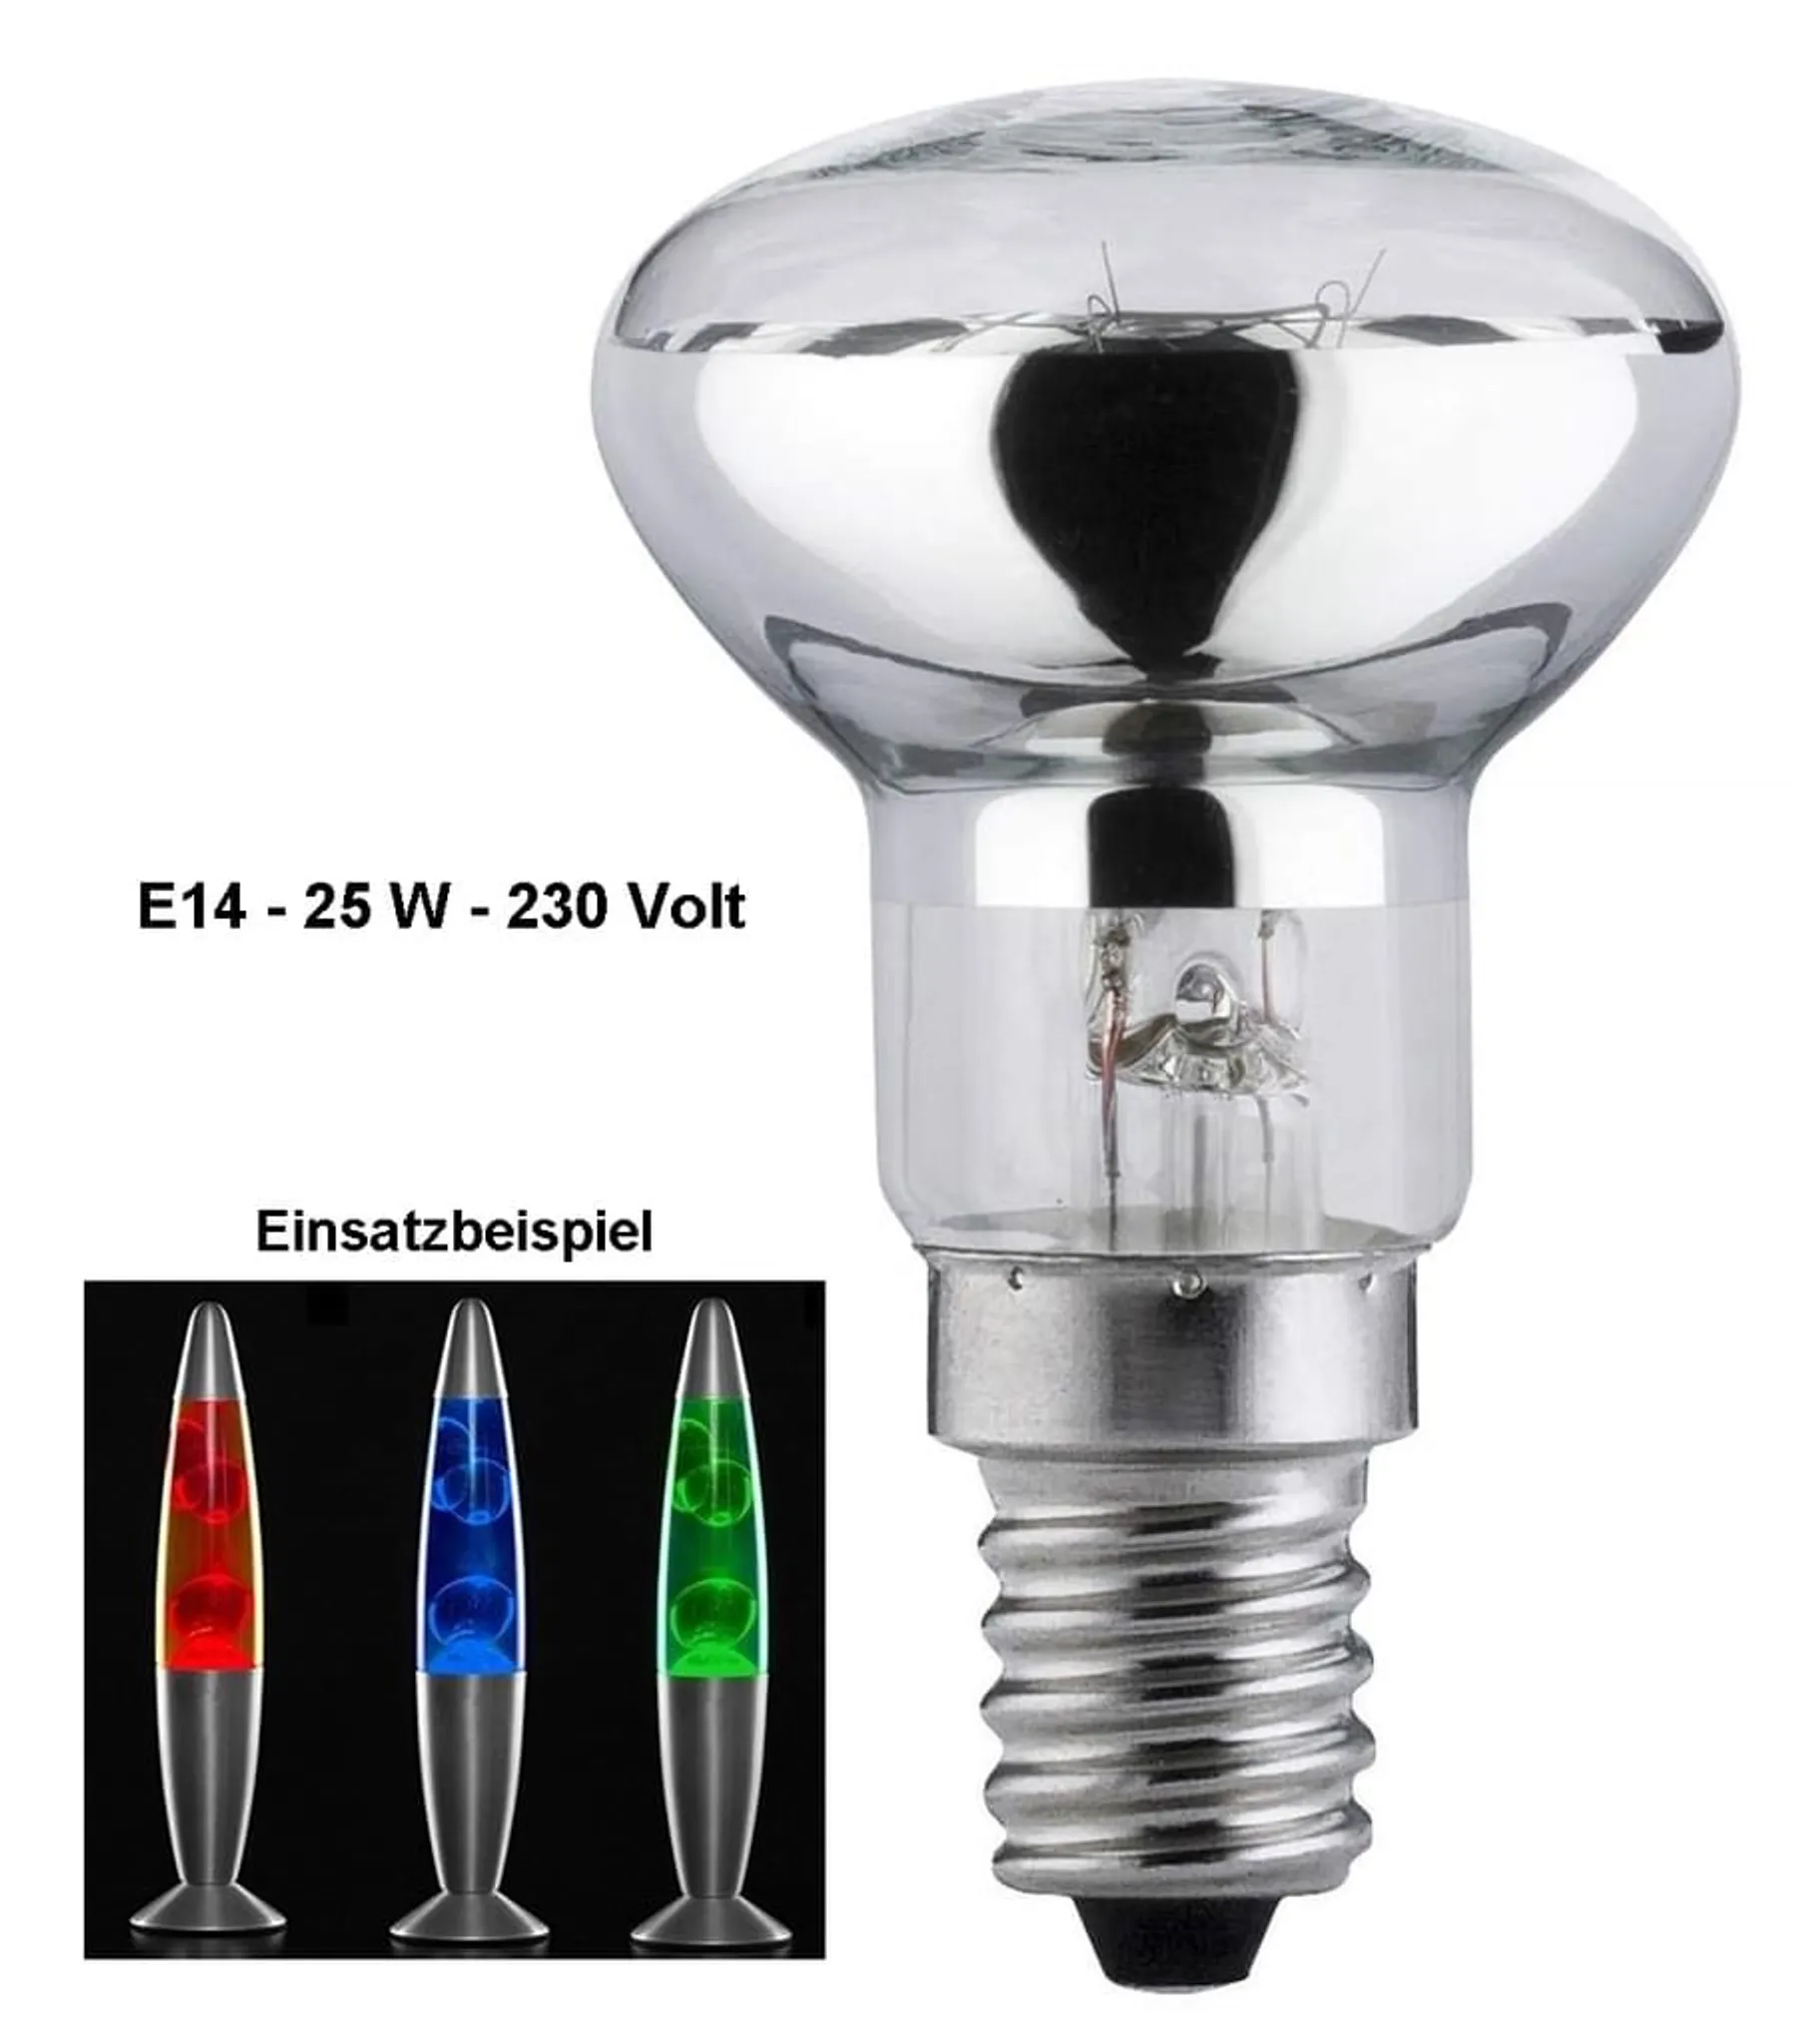 4 Stück E14 Fassung Lampe Glühbirne 250V 4A Kunststoff Glühbirne